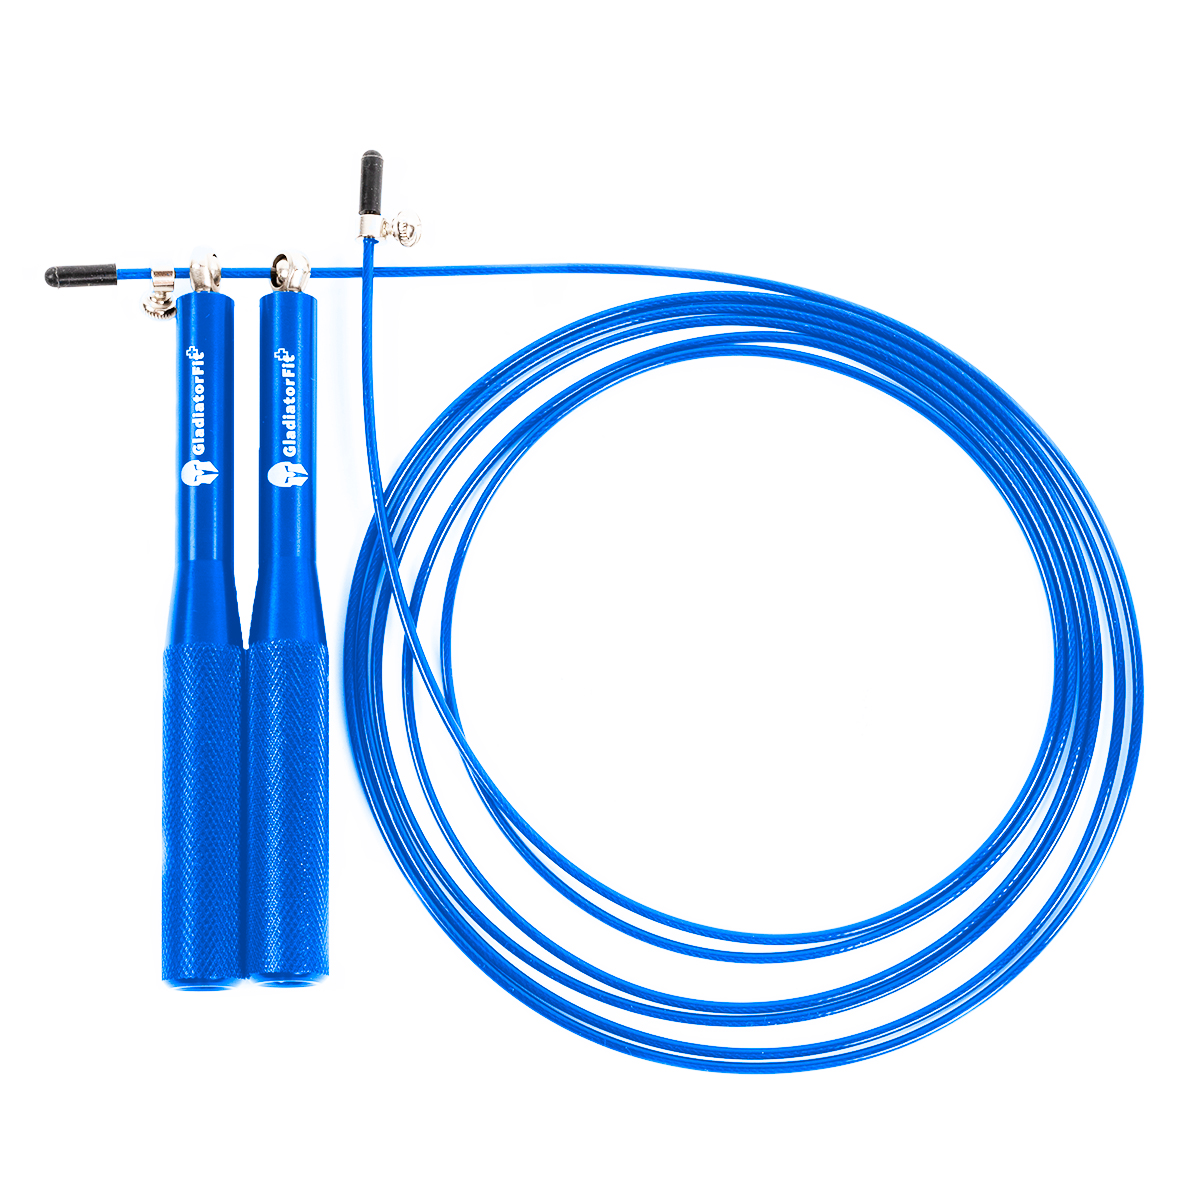 Speed Rope" Corda De Saltar Em Alumínio Ajustável De 3 M + Saco | Azul